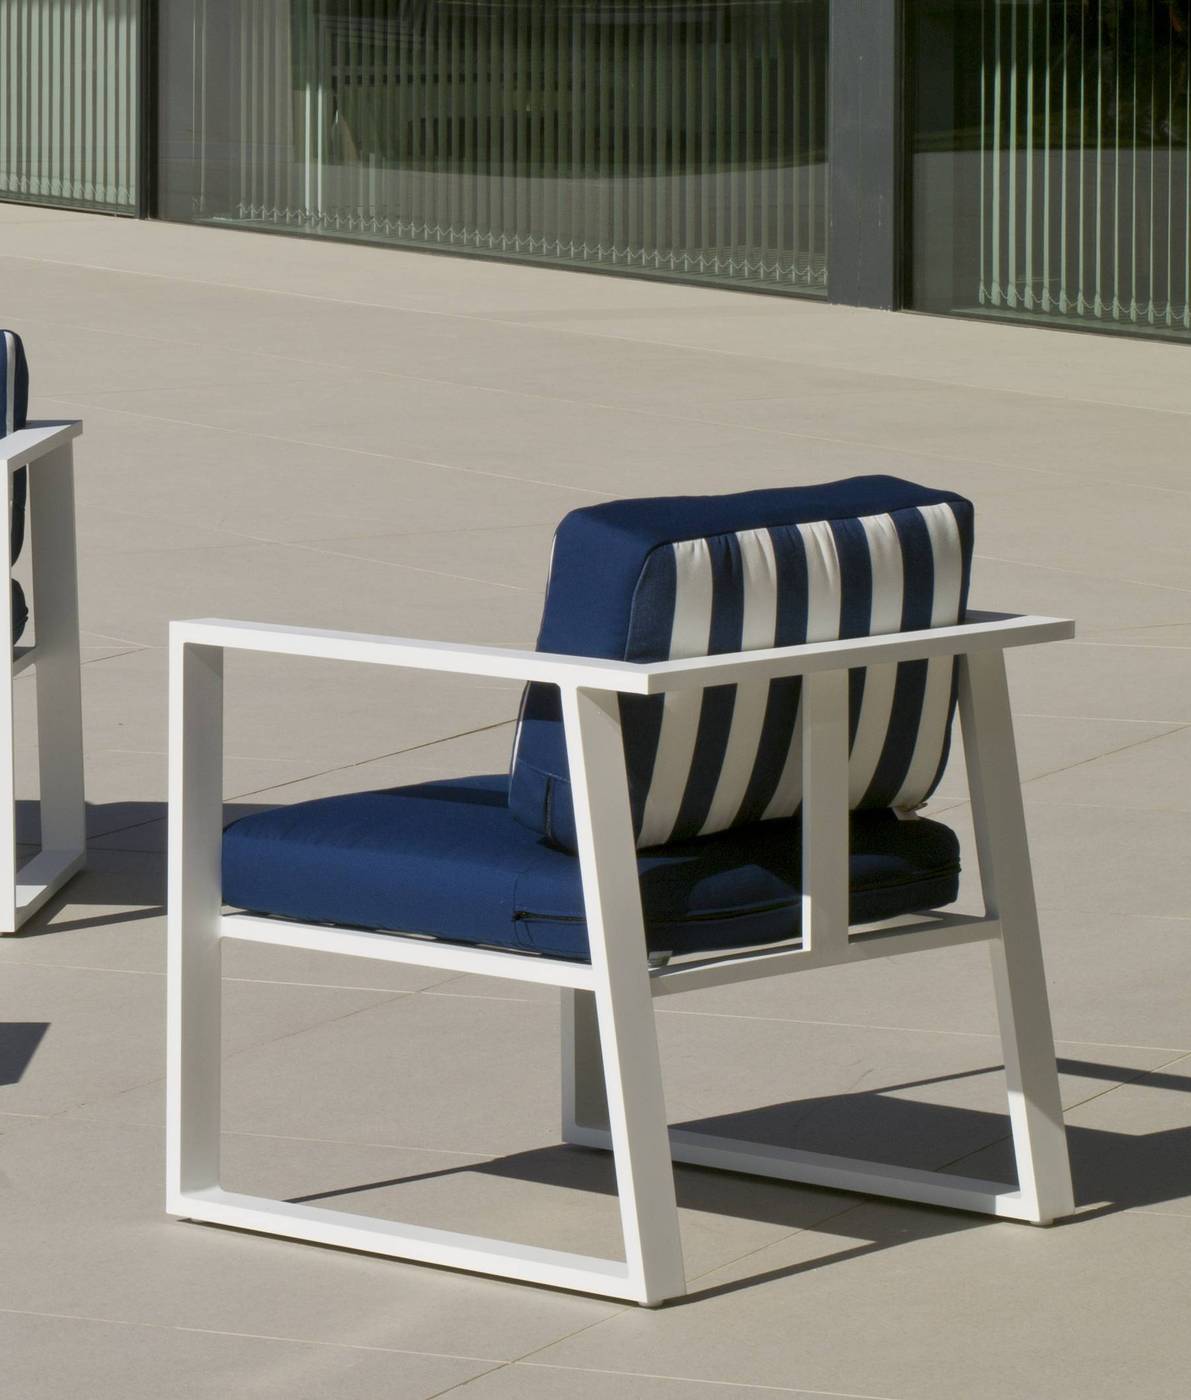 Conjunto Aluminio Luxe Boracay-8 - Conjunto aluminio luxe: 1 sofá de 3 plazas + 2 sillones + 1 mesa de centro + cojines. Disponible en color blanco, plata y antracita.